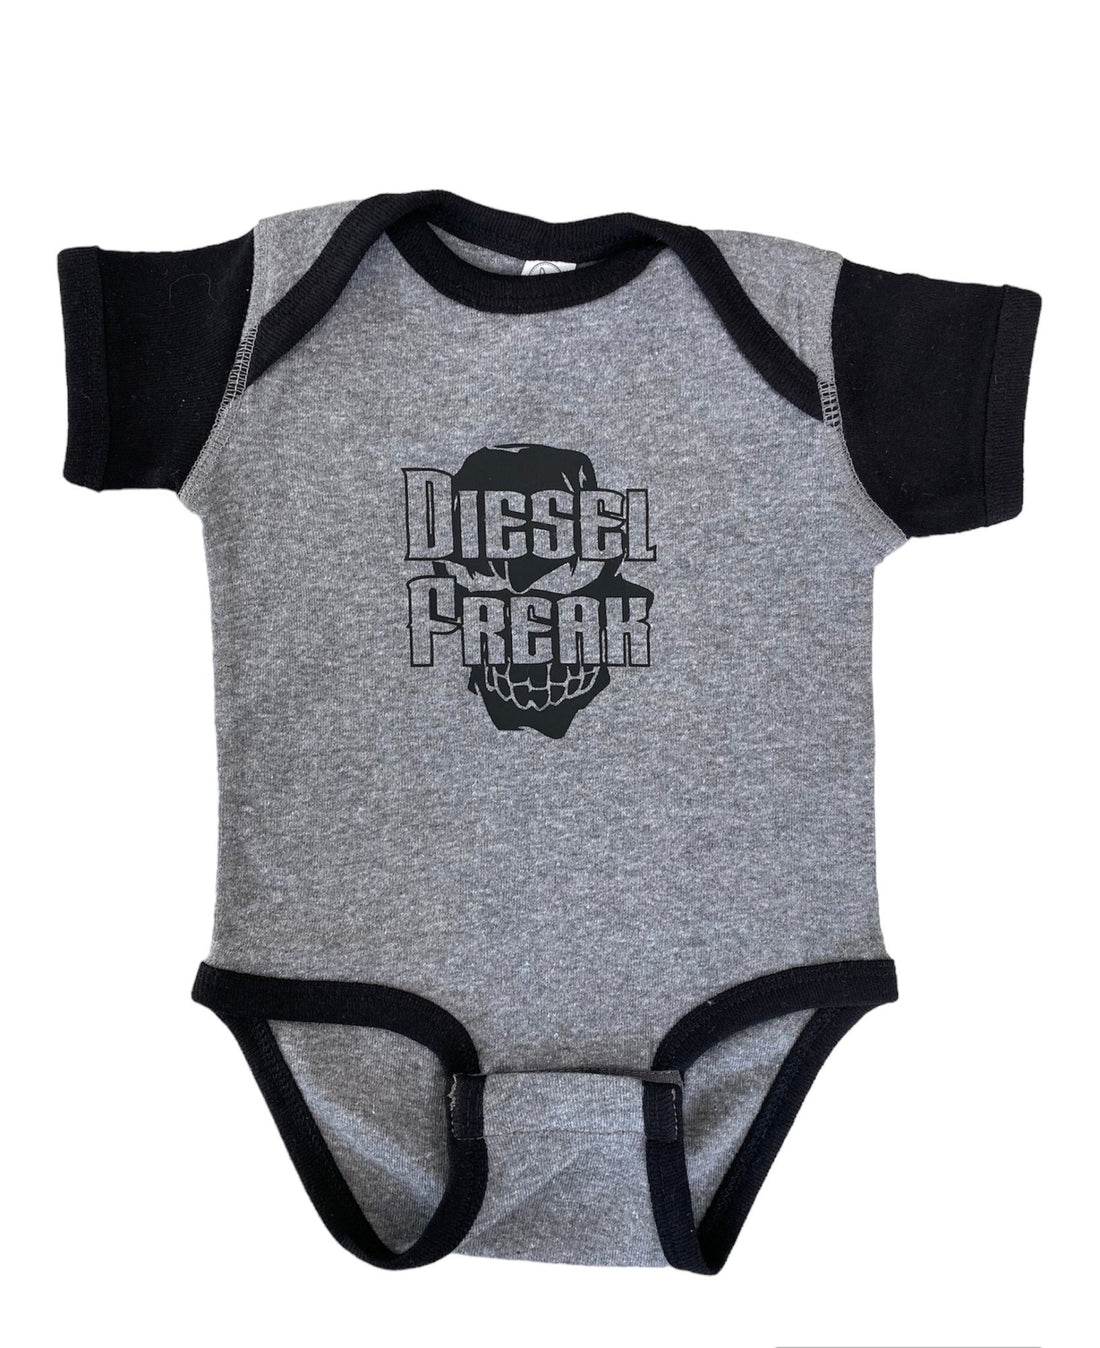 Diesel Freak Skully Infant Bodysuit - Diesel Freak